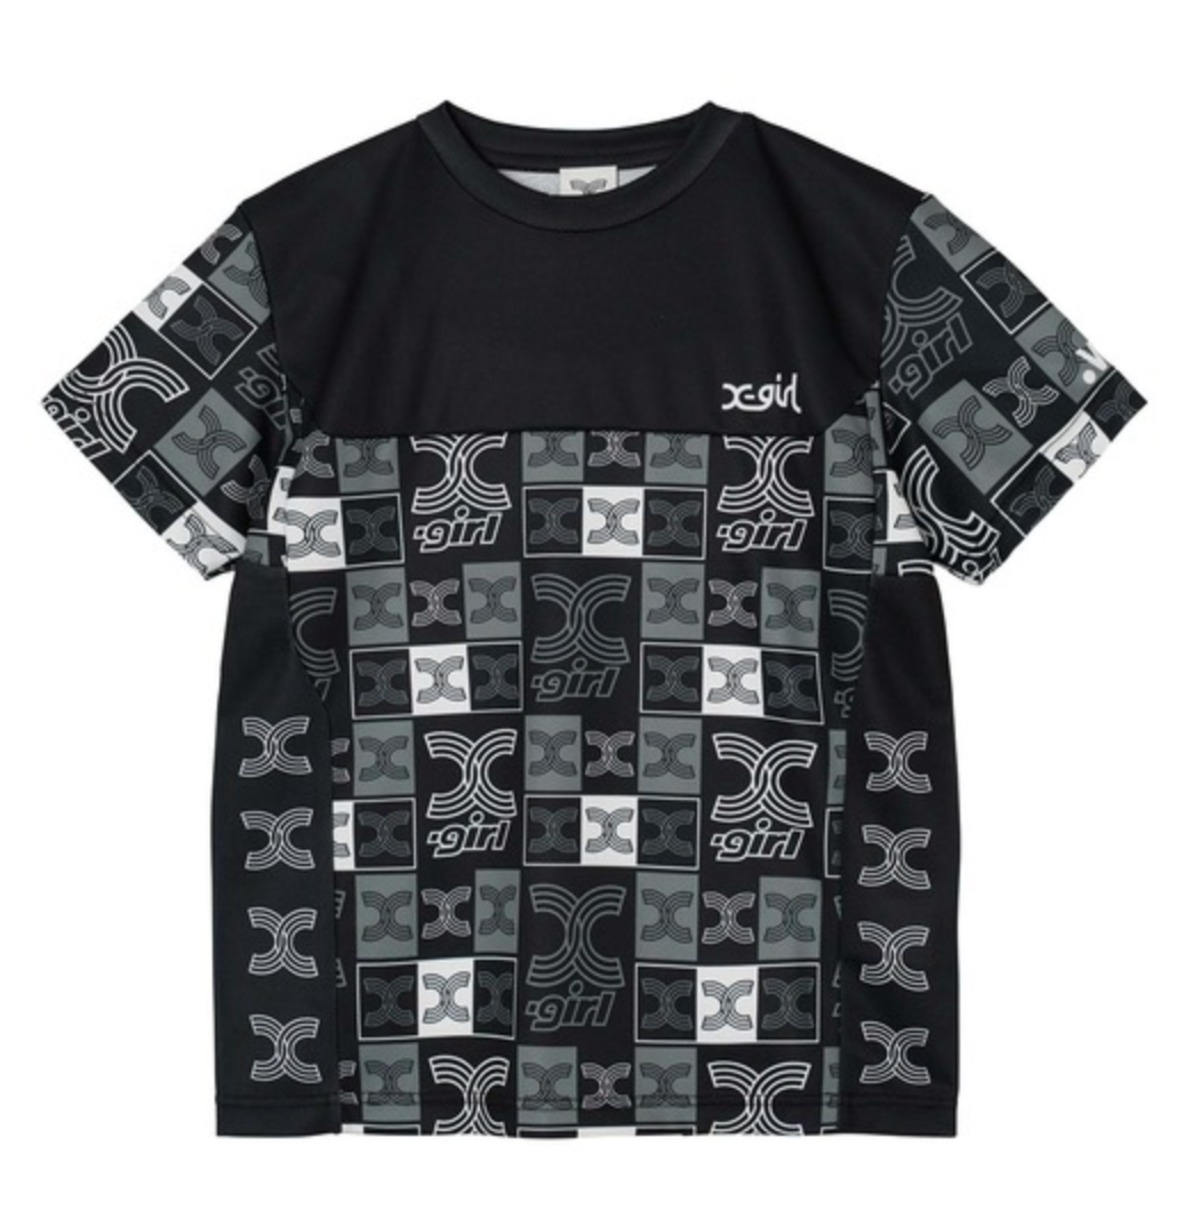 xgirl ロンT - Tシャツ